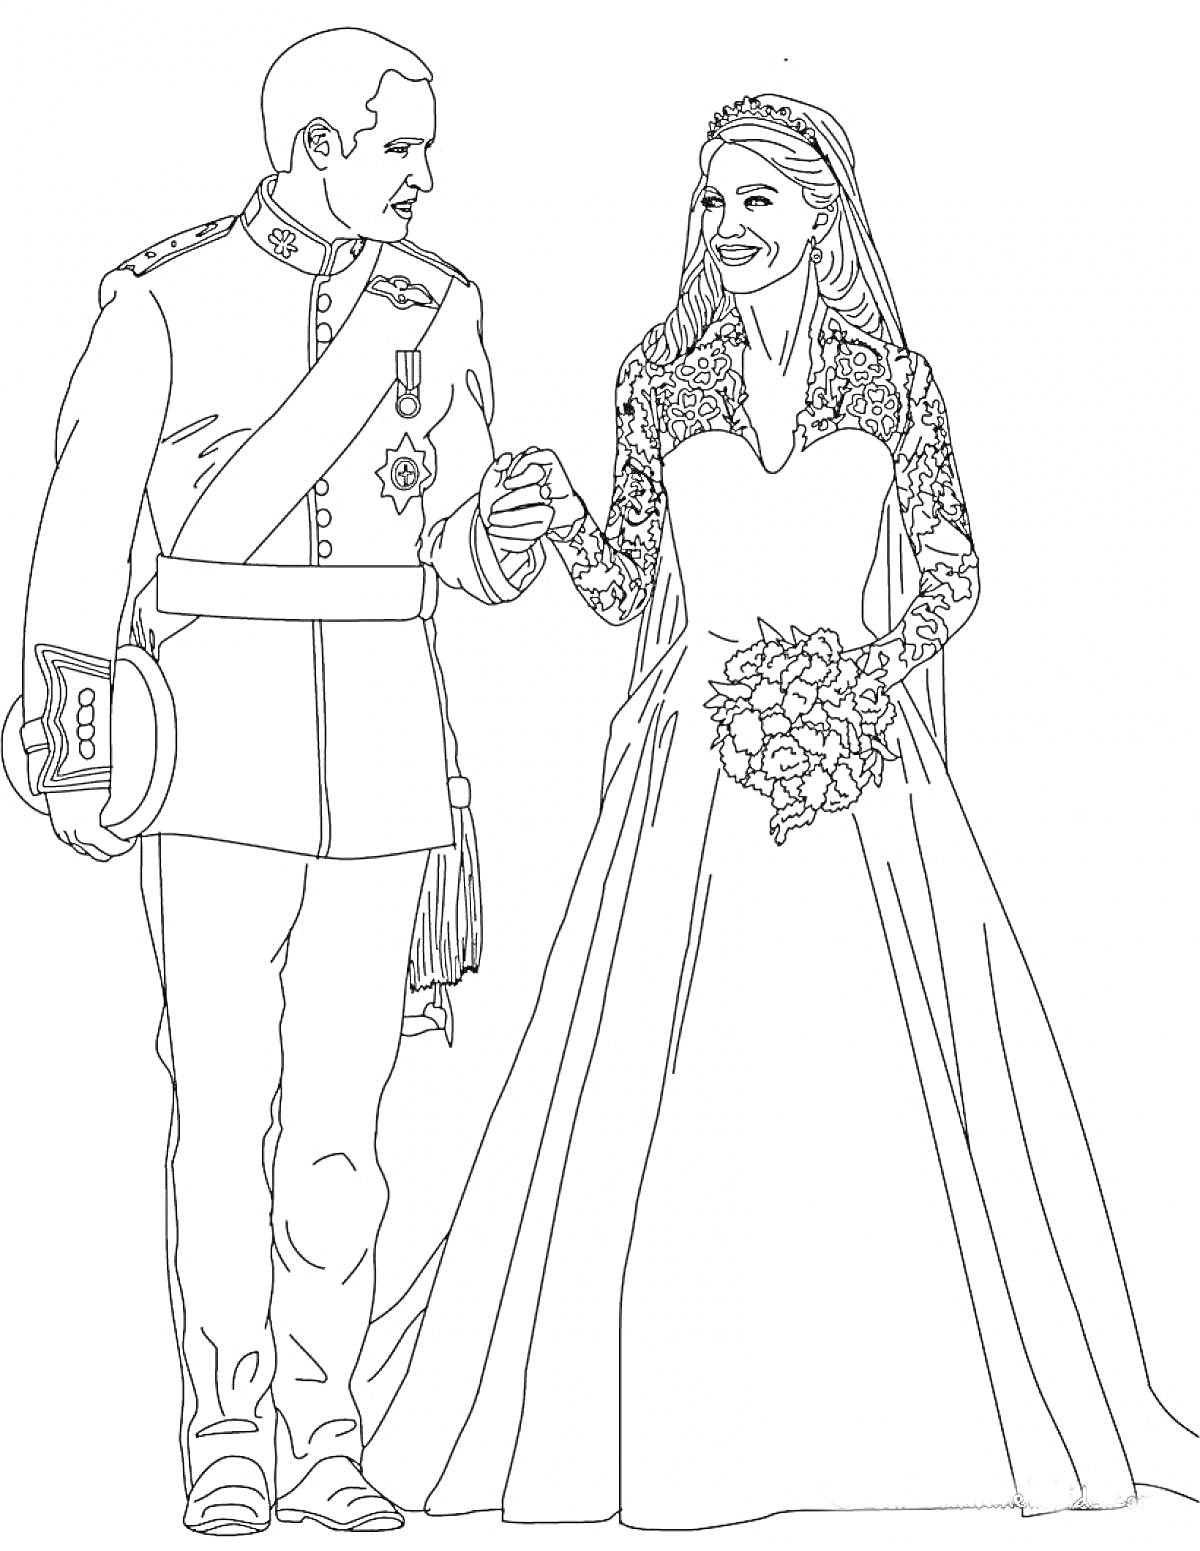 Раскраска Молодожены в свадебных нарядах, невеста в кружевном платье с букетом, жених в форме